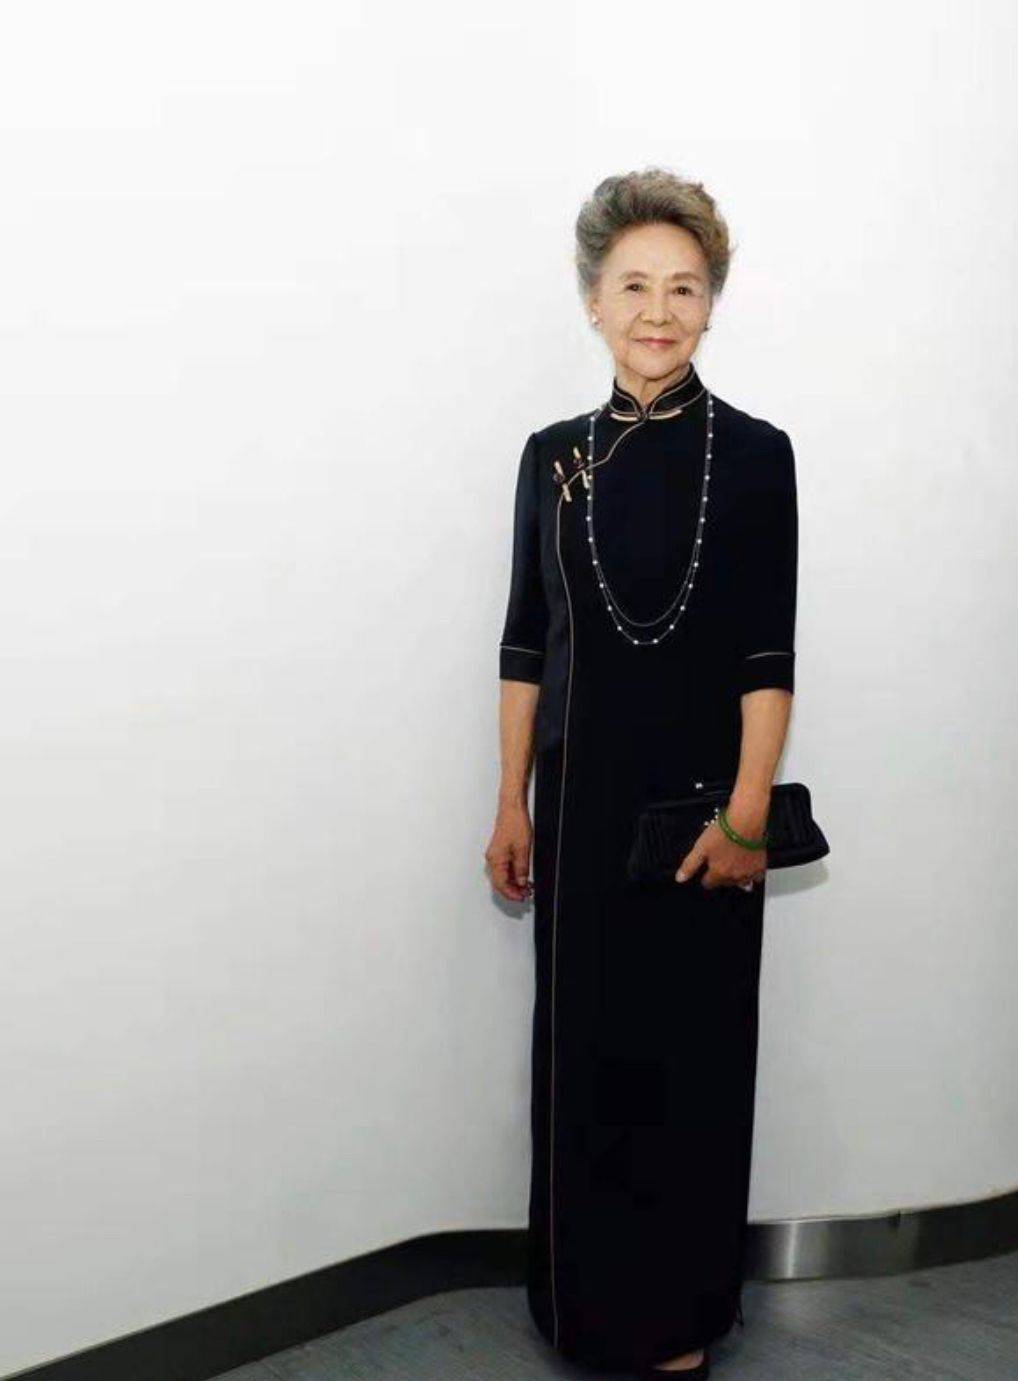 原创83岁吴彦姝越老越精致穿一身旗袍优雅又端庄奶奶辈该有的样子